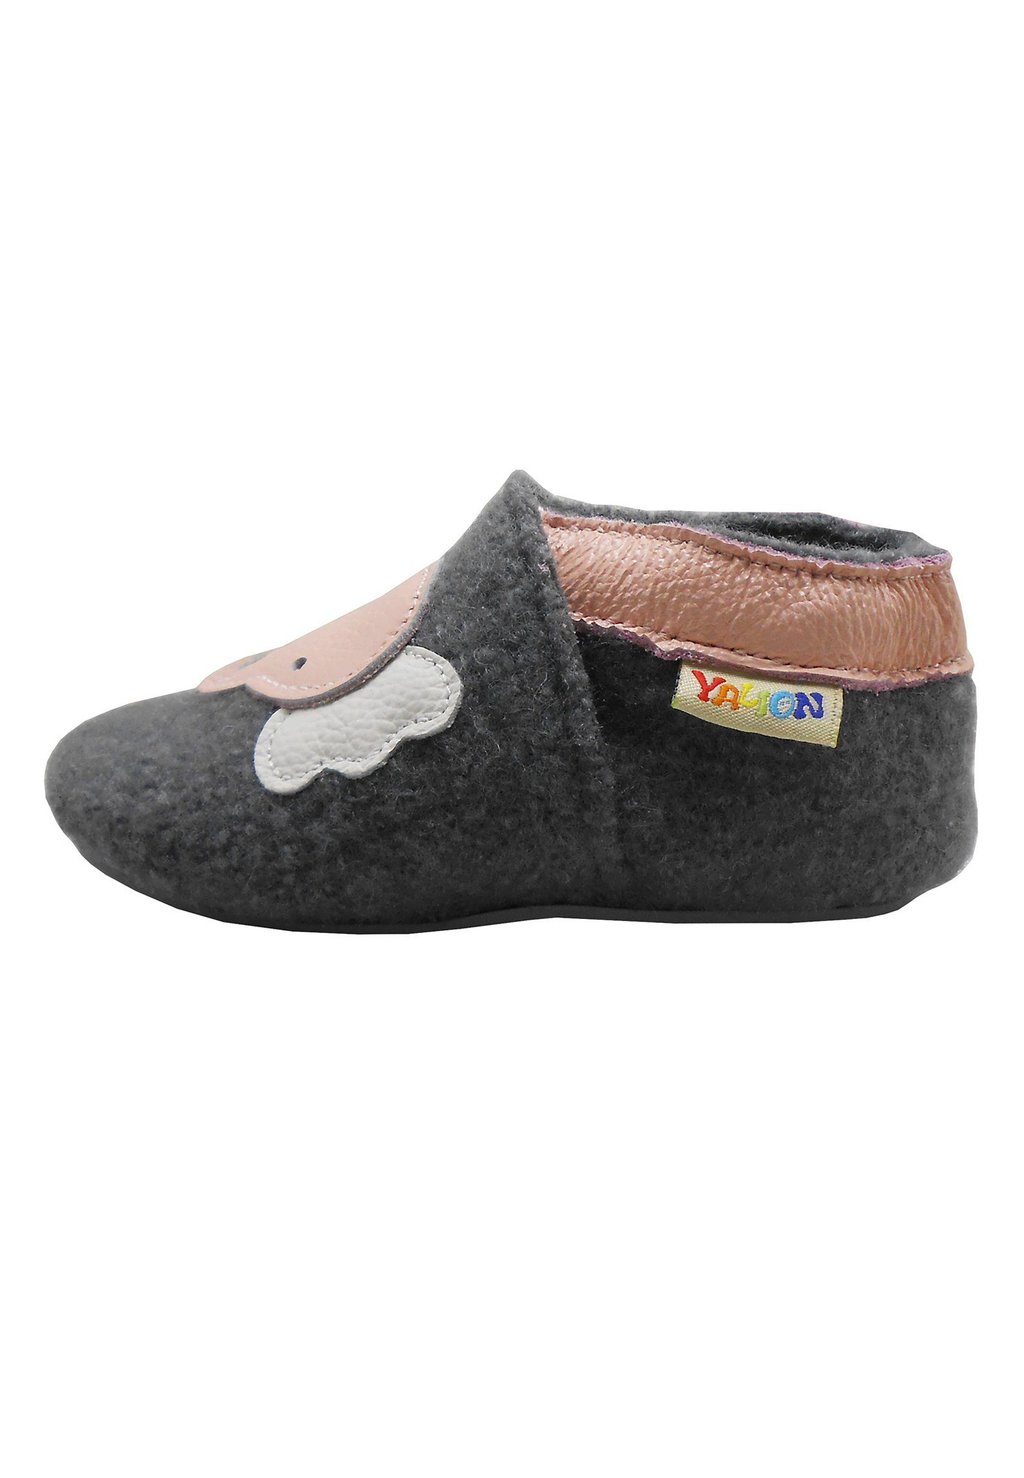 Обувь для ползания YALION KRABBEL ELEFANT, цвет elefant grau обувь для ползания yalion krabbel elefant цвет elefant grau